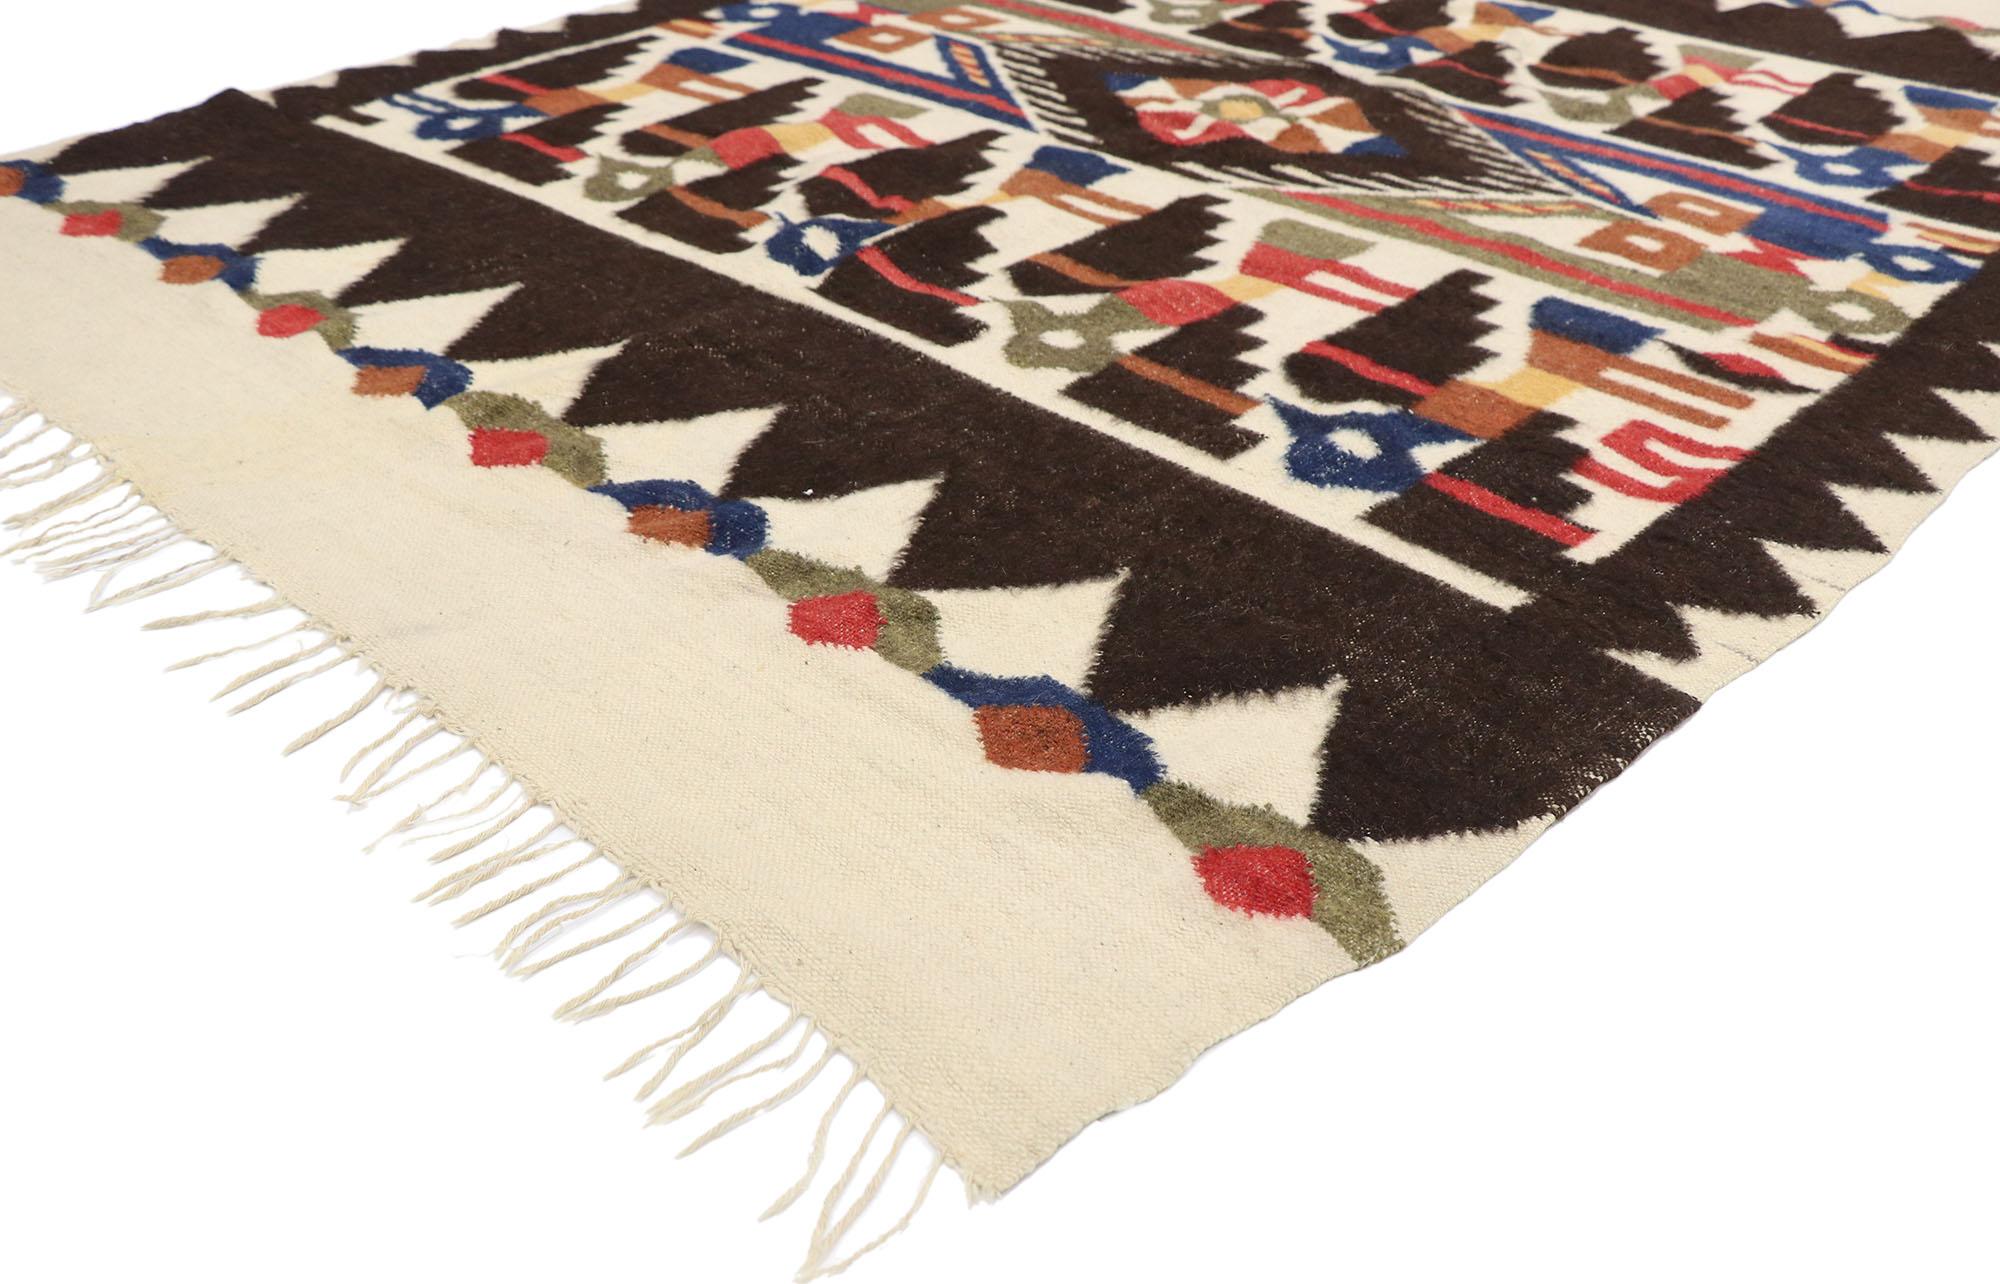 78077 Vintage Südamerikanischer Kilim Teppich mit Tribal Stil 05'04 x 07'06. Dieser handgewebte südamerikanische peruanische Kelimteppich aus Wolle, der der präinkanischen Chancay-Kultur nachempfunden ist, ist eine fesselnde Vision gewebter